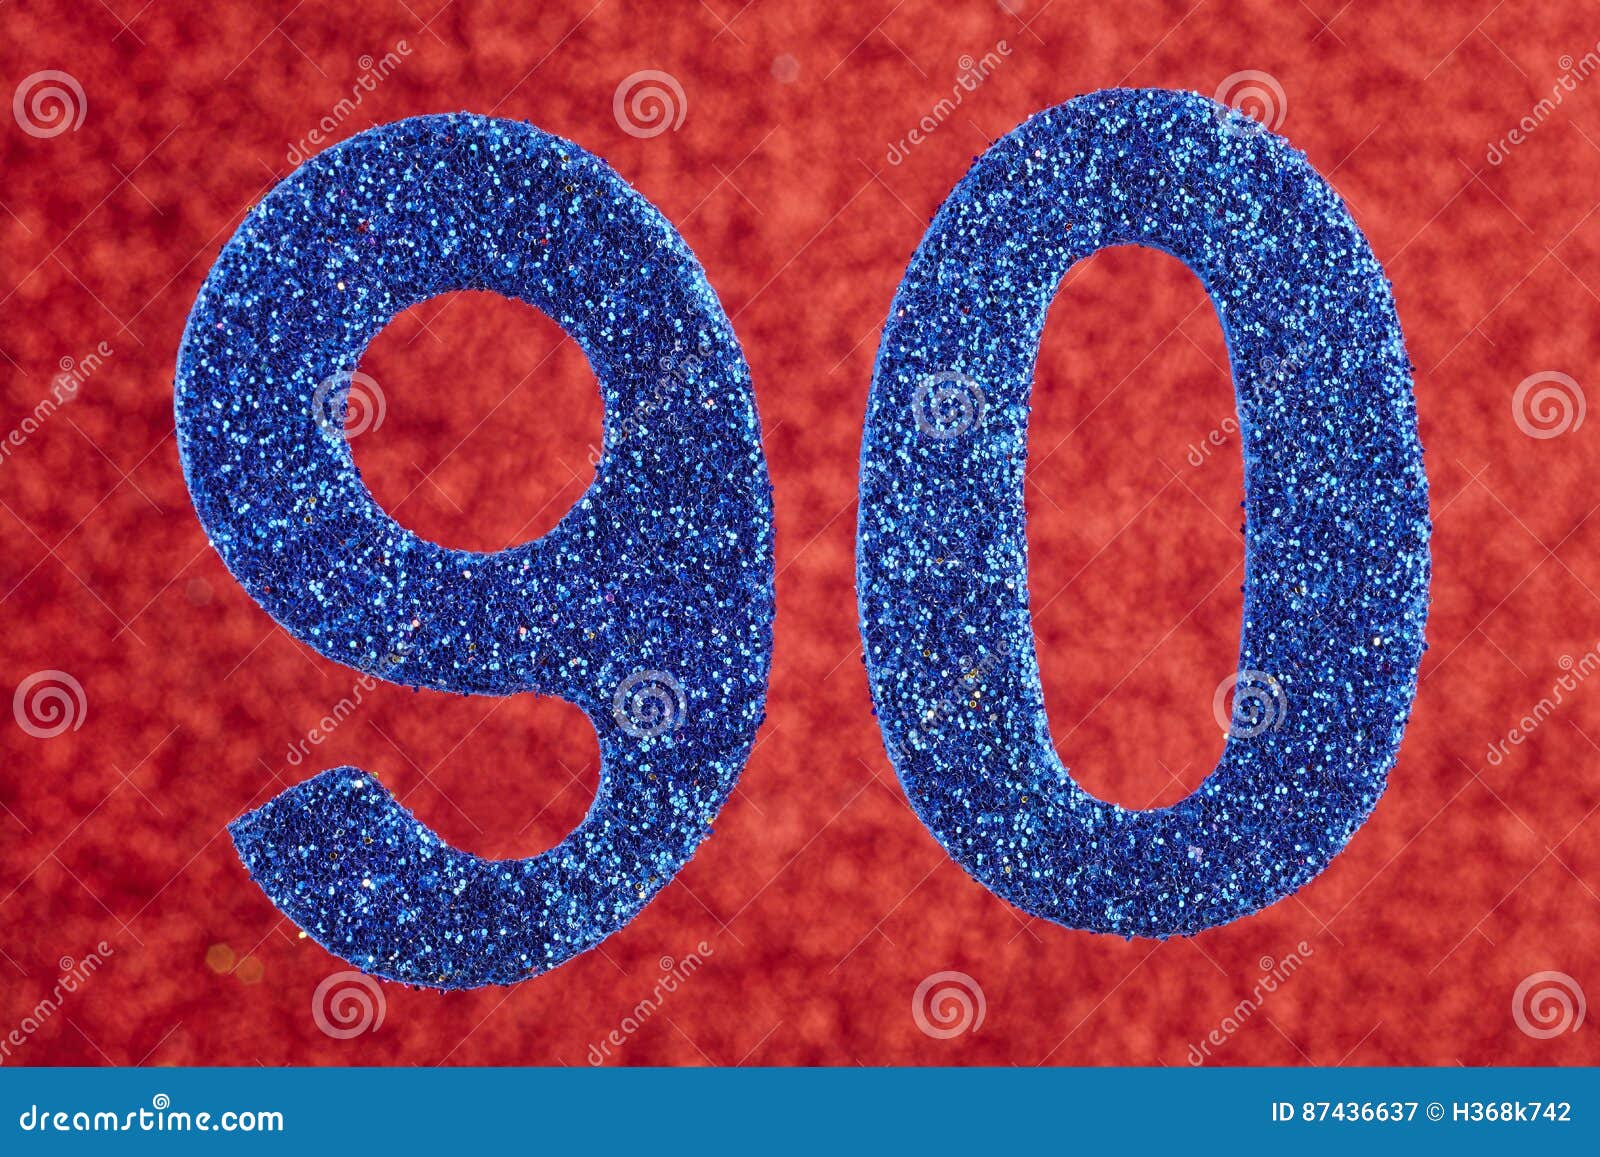 Видео номер 60. Цифра 60. Цифра 60 на Красном фоне. Цифра 60 сиреневая. Цифра 60 голубая.